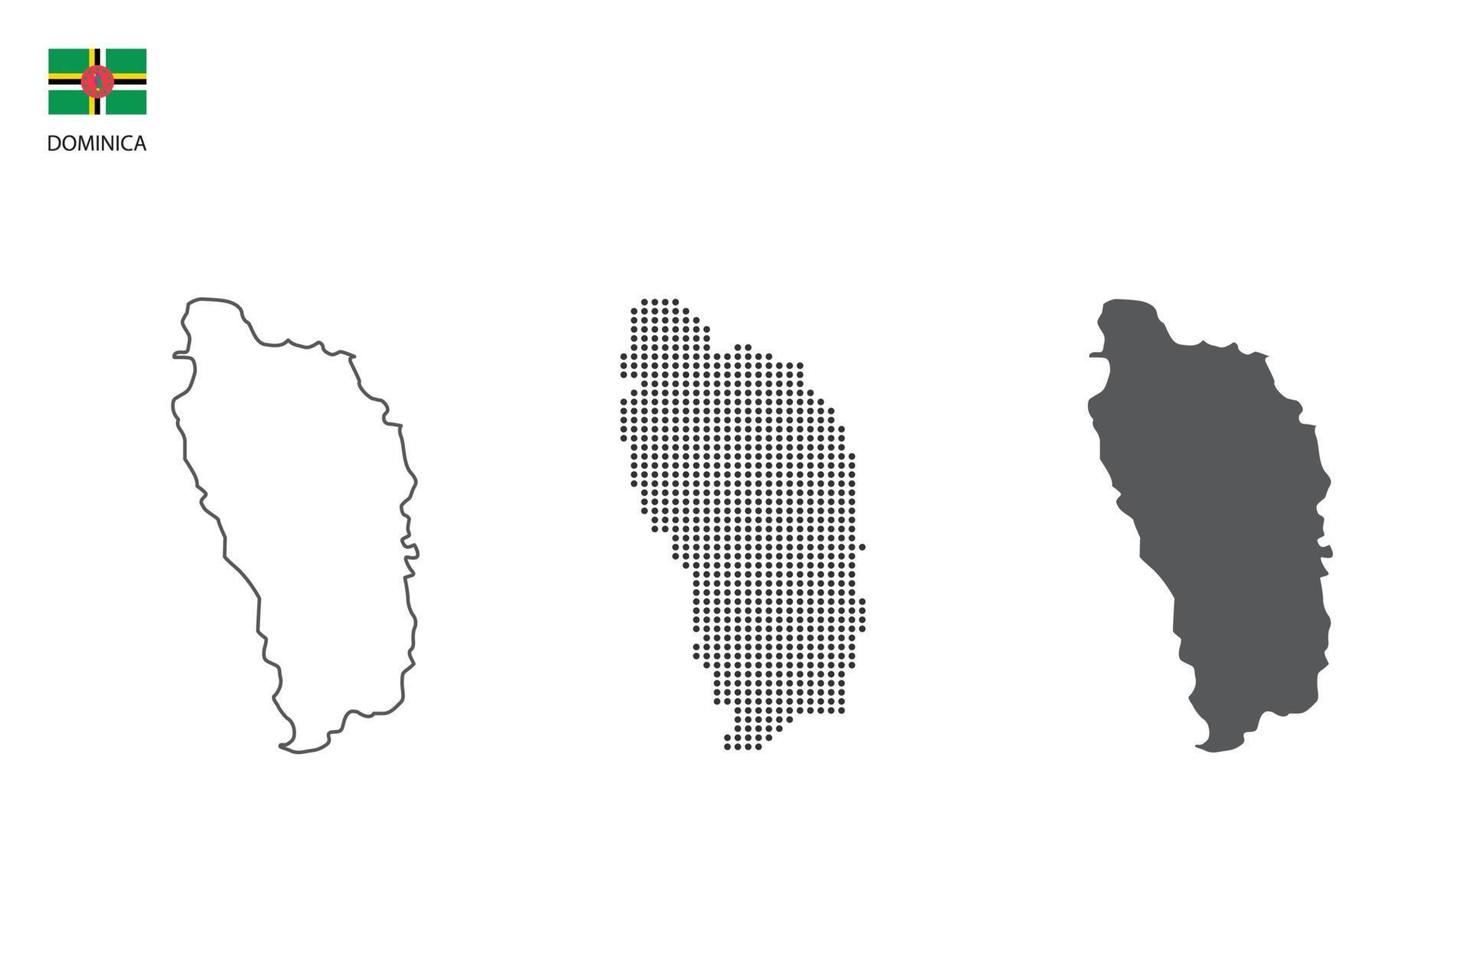 3 versies van dominica kaart stad vector door dun zwart schets eenvoud stijl, zwart punt stijl en donker schaduw stijl. allemaal in de wit achtergrond.